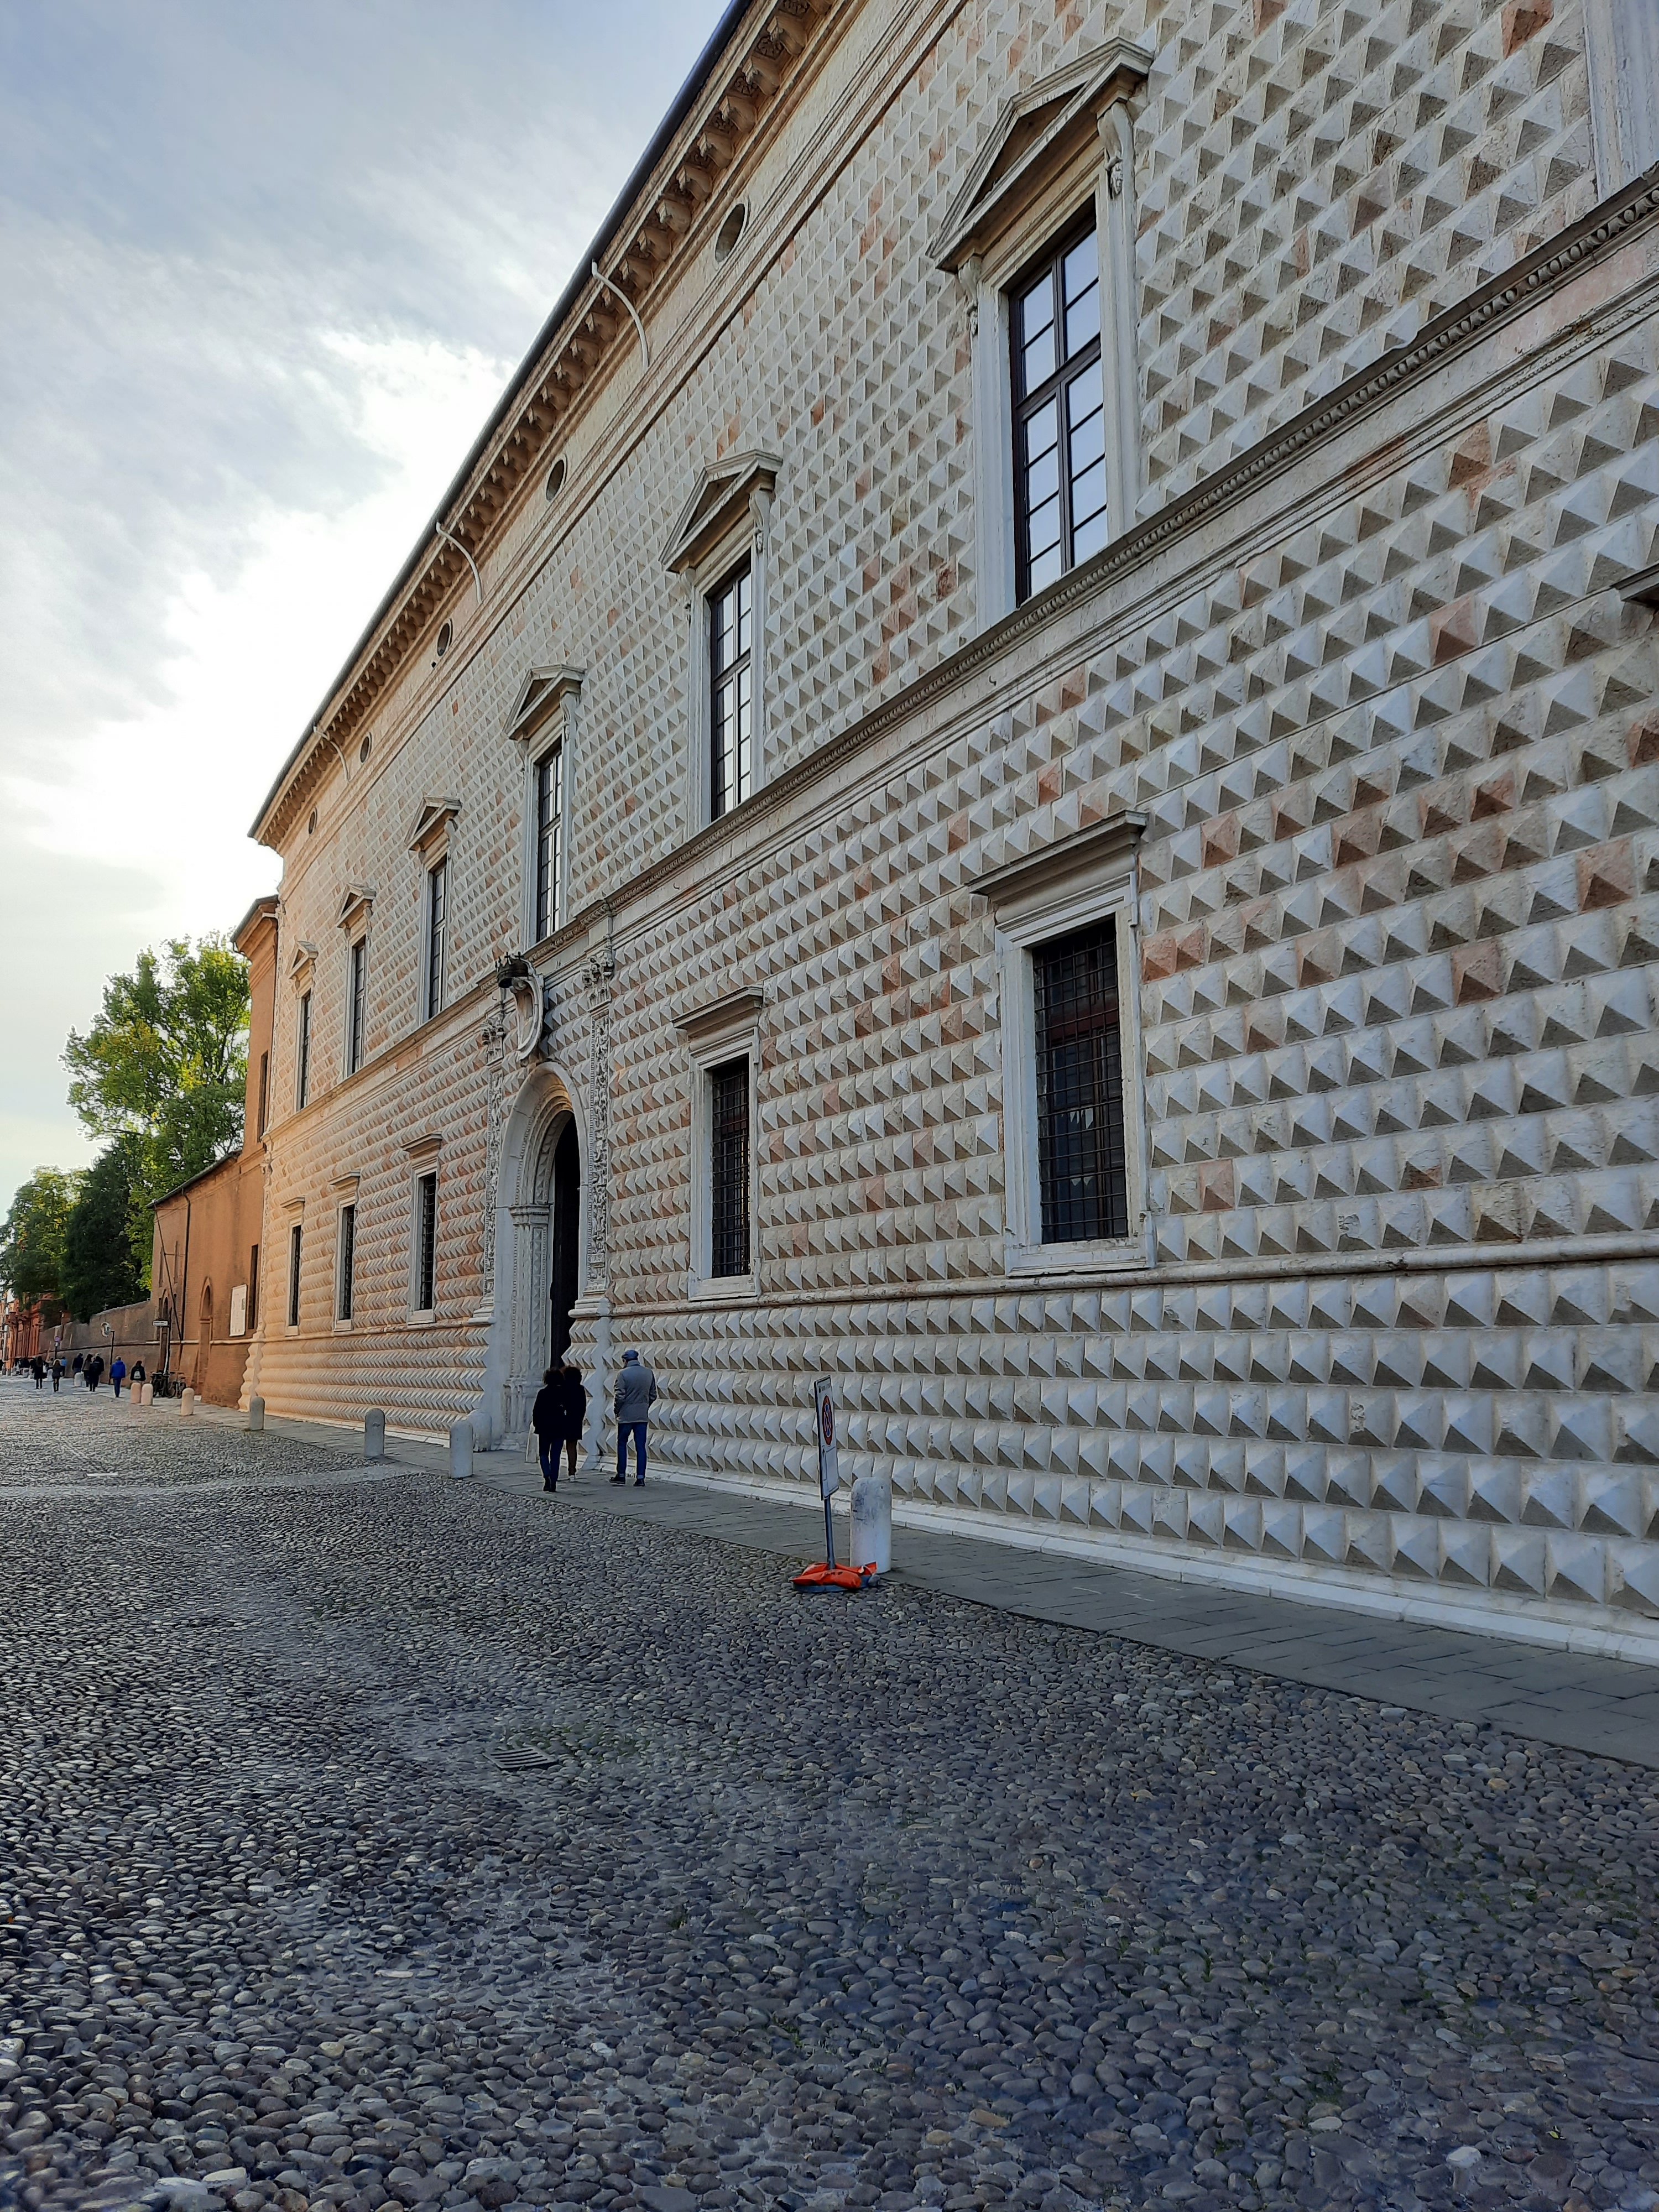 El “Palazzo dei Diamanti” de Ferrara.